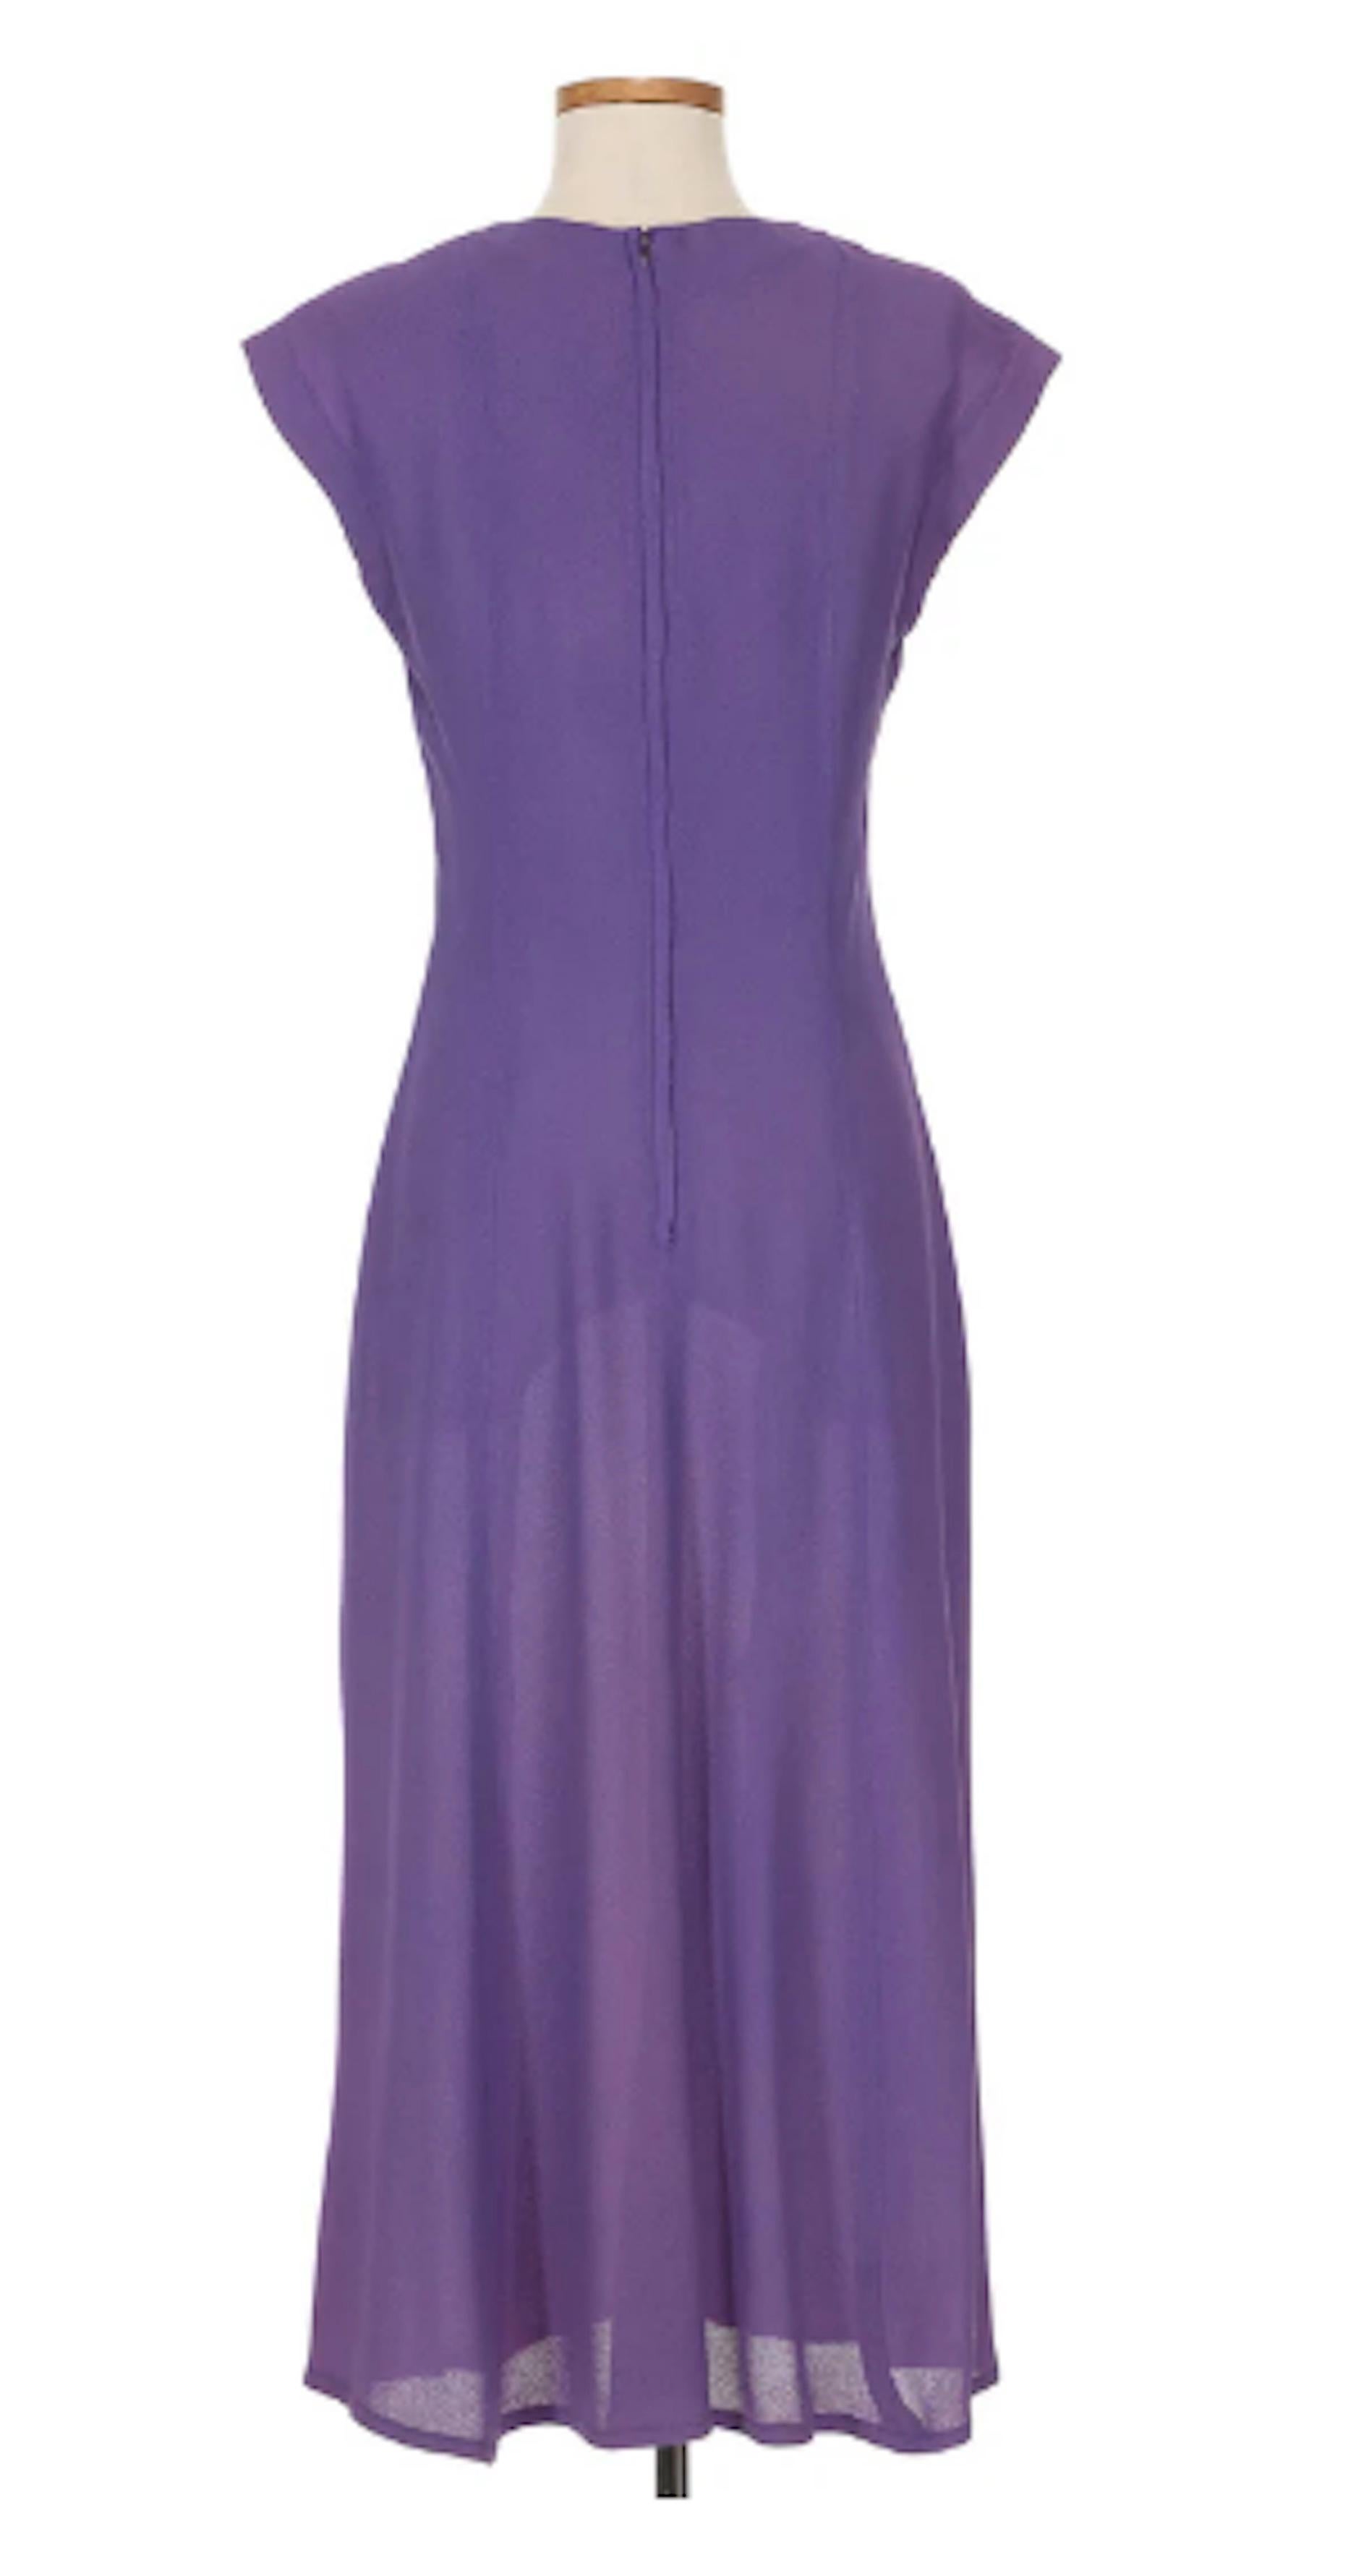 Ossie Clark für Radley 1970's Lila Kleid. Ossie Clark wurde durch seine Entwürfe in der Londoner Modeszene der 60er Jahre bekannt. Zusammen mit seiner Frau Celia Birtwell entwarf Clark Stücke mit kühnen Mustern und gewagten Farben. Dieses Kleid ist